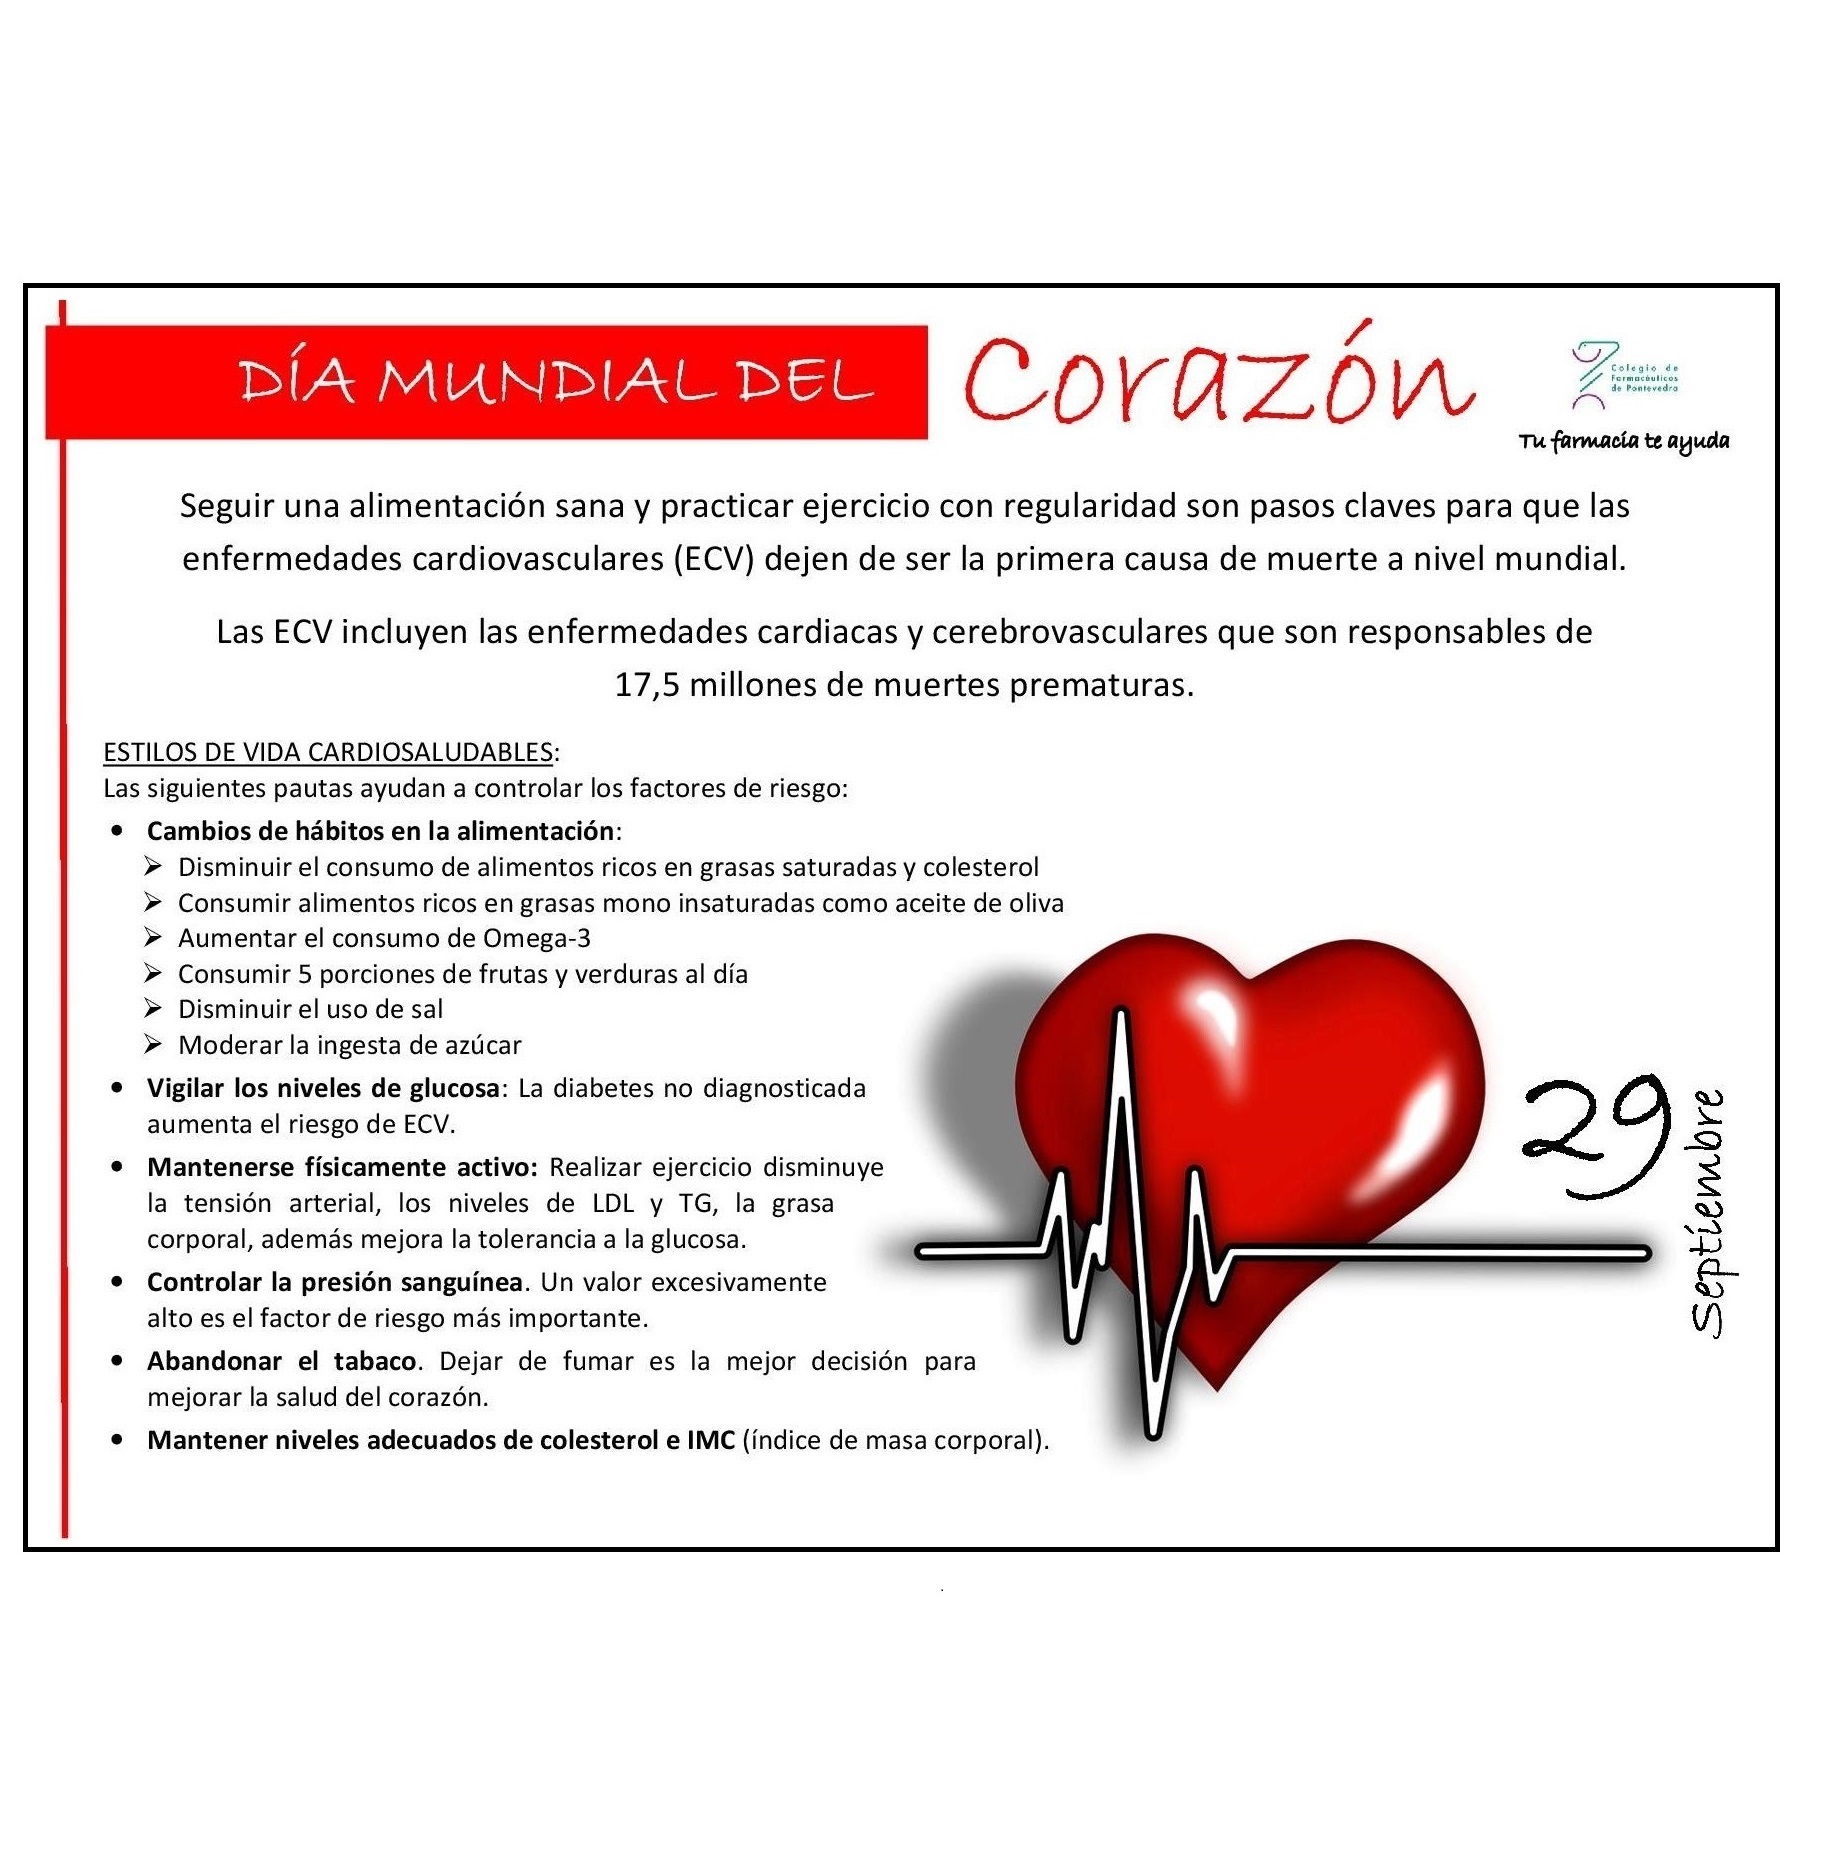 Día Mundial del Corazón 2017 - Colegio de Farmacéuticos de Pontevedra